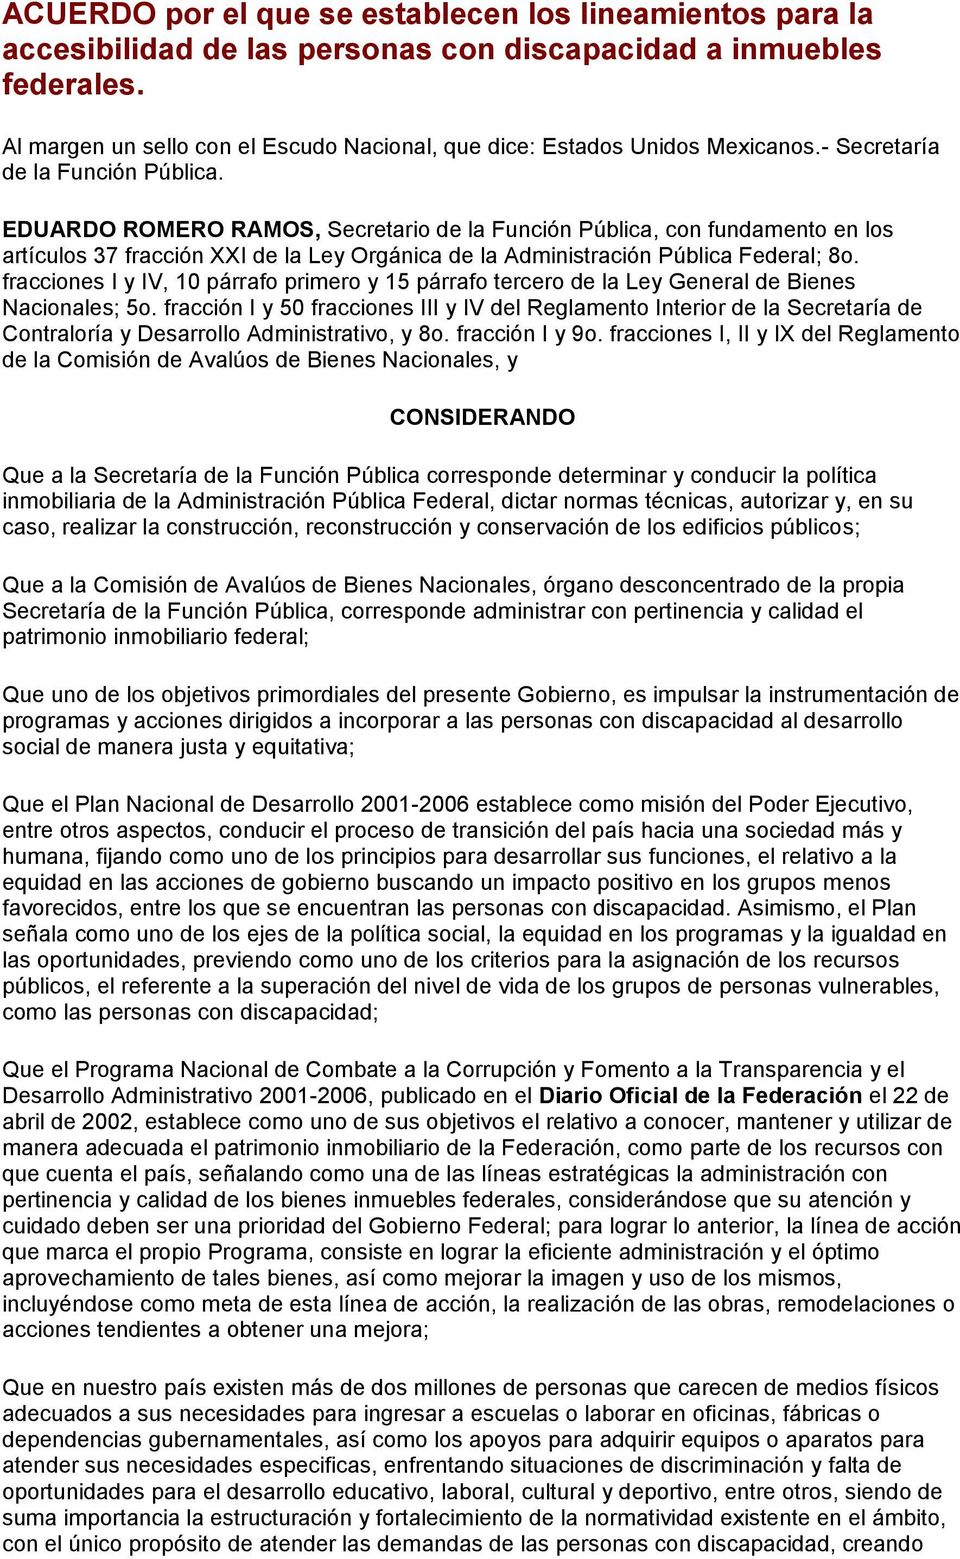 EDUARDO ROMERO RAMOS, Secretario de la Función Pública, con fundamento en los artículos 37 fracción XXI de la Ley Orgánica de la Administración Pública Federal; 8o.